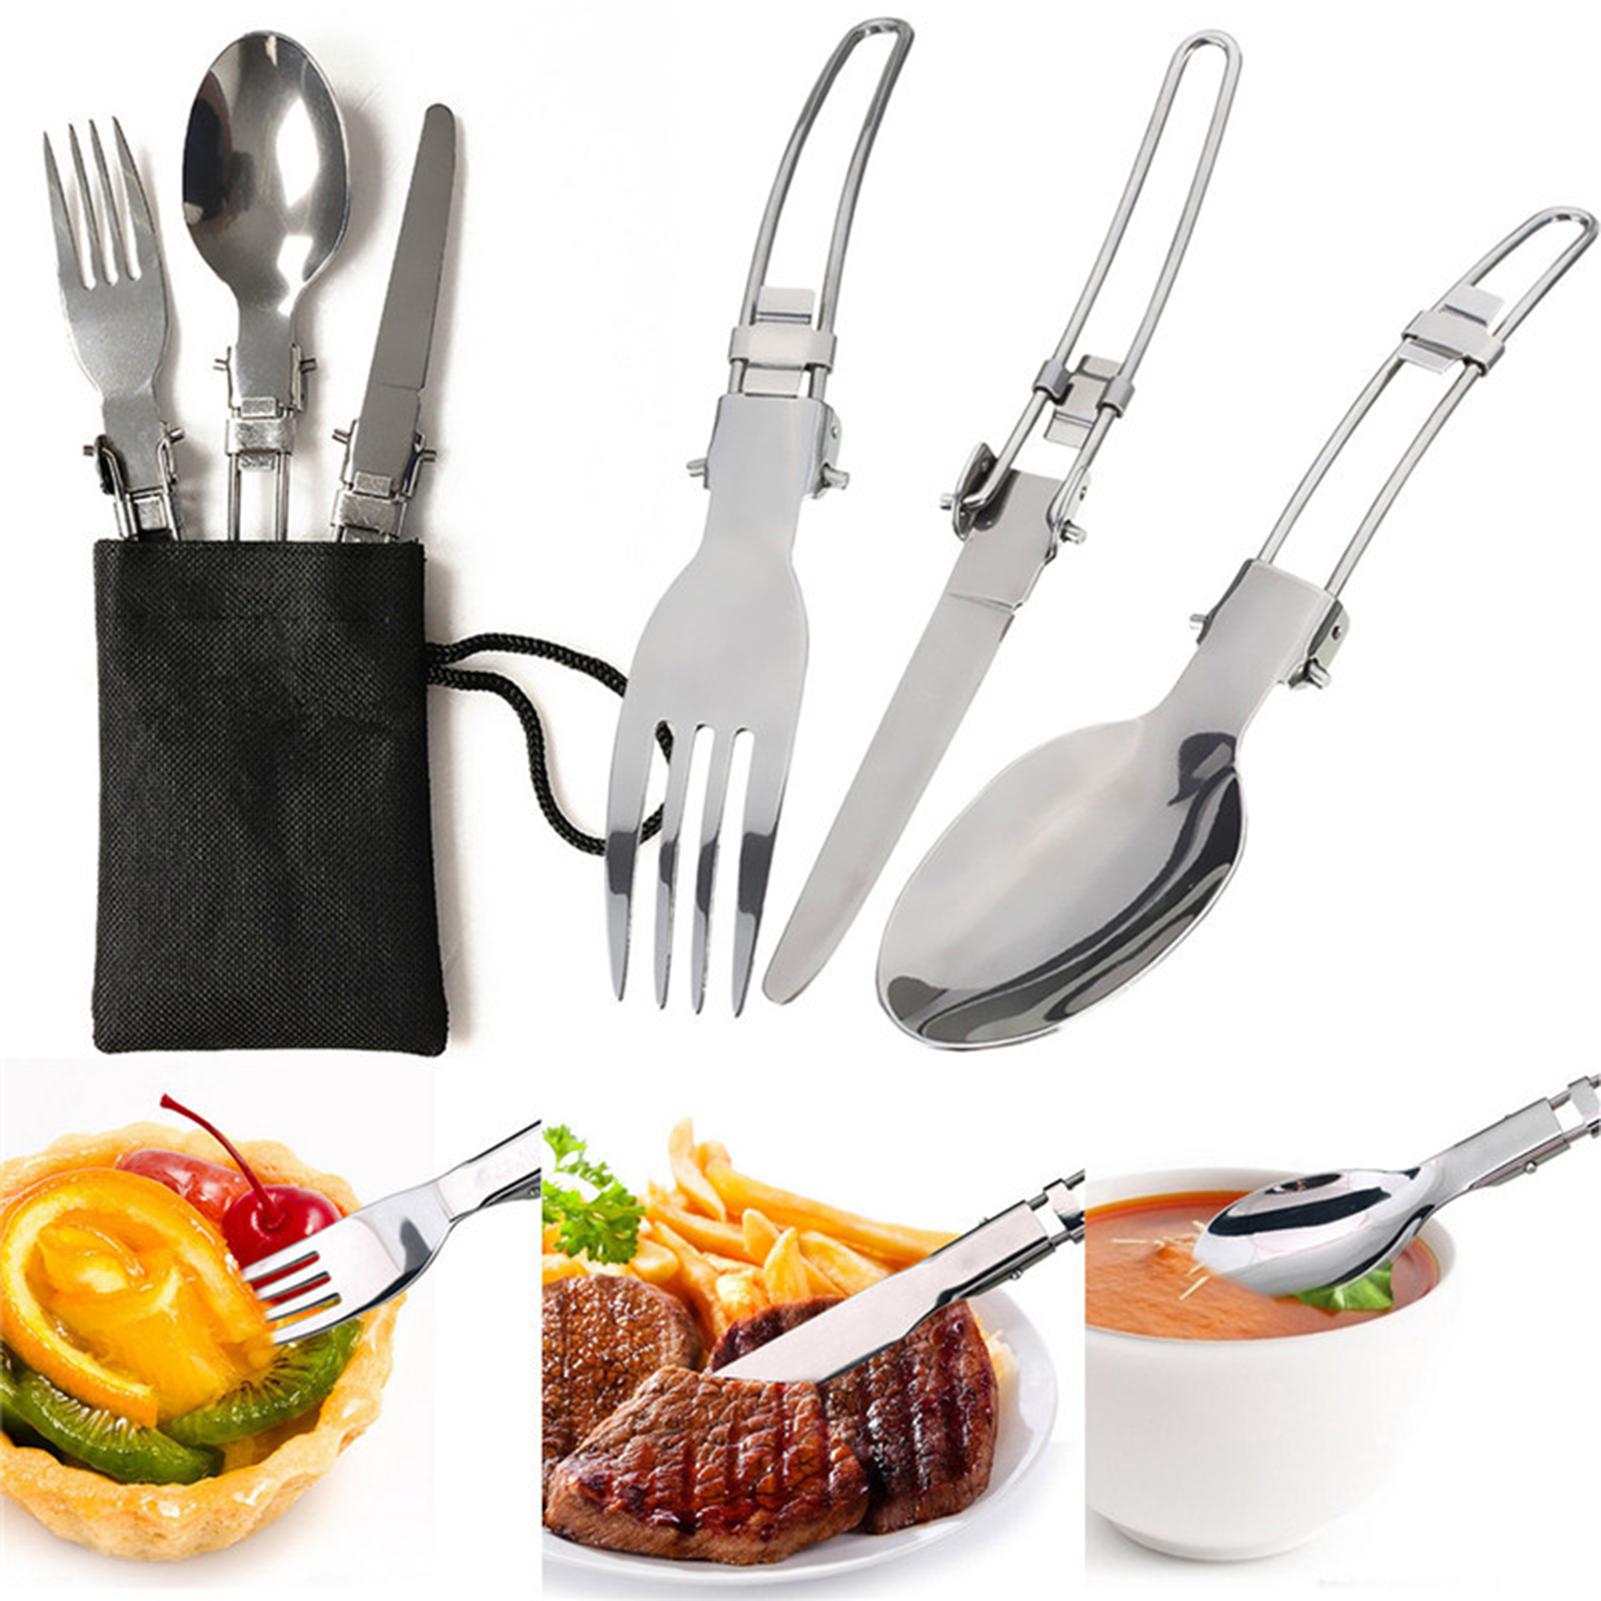 Bộ dụng cụ nấu ăn cắm trại bao gồm chảo, ấm trà, bếp và dao kéo.. Có thể gấp gon với túi đựng tiện lợi